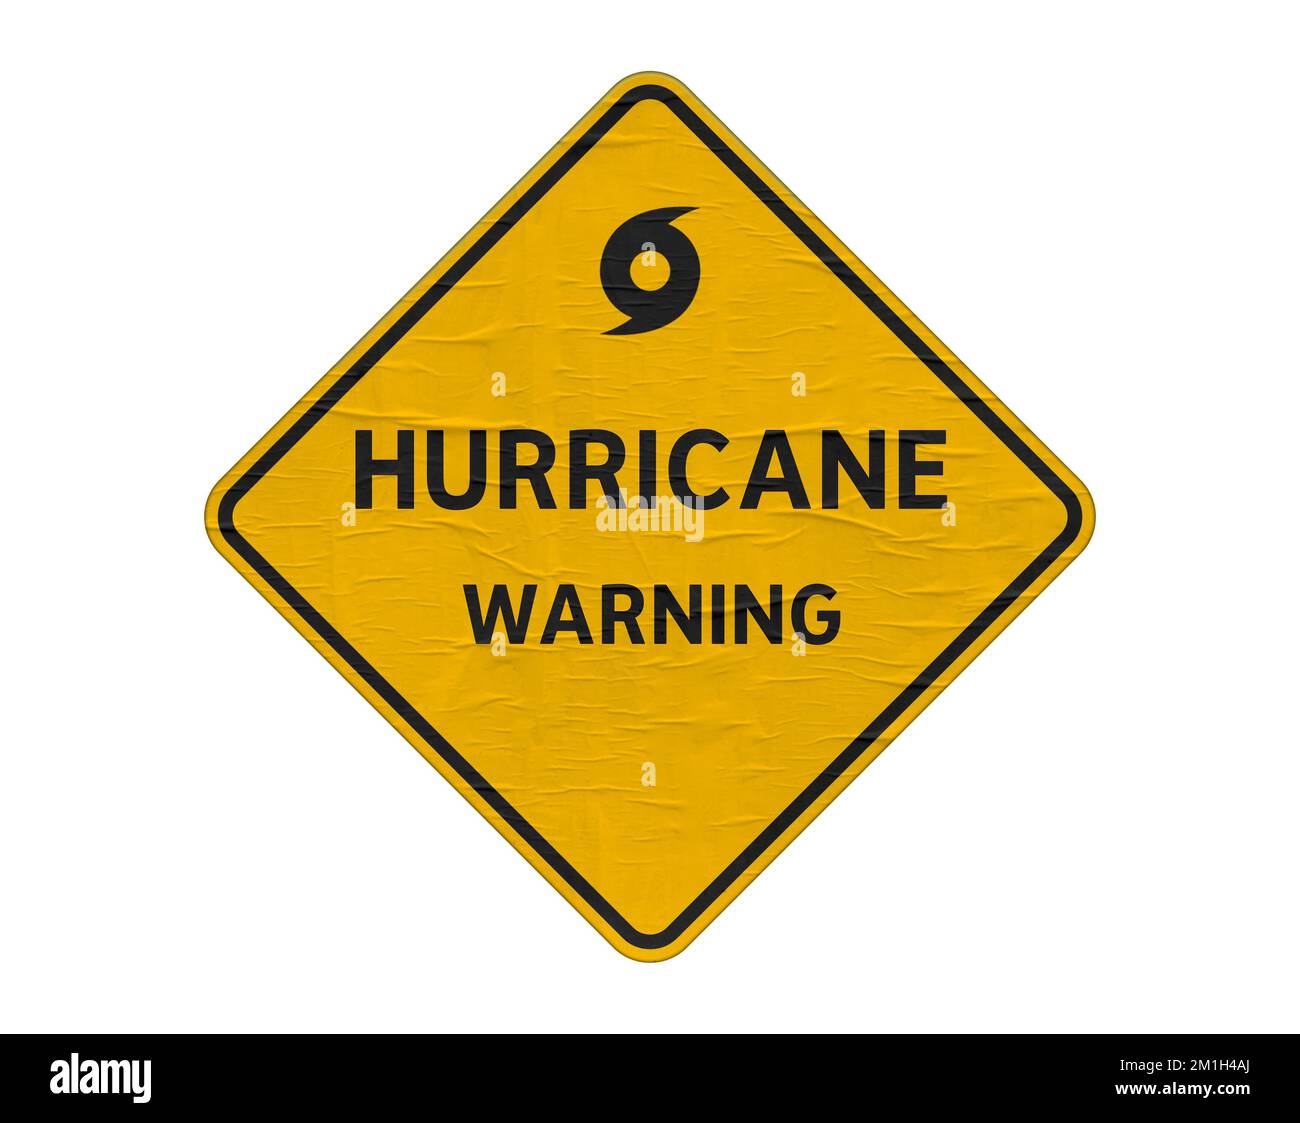 Hurricane warning - yellow road sign Stock Photo